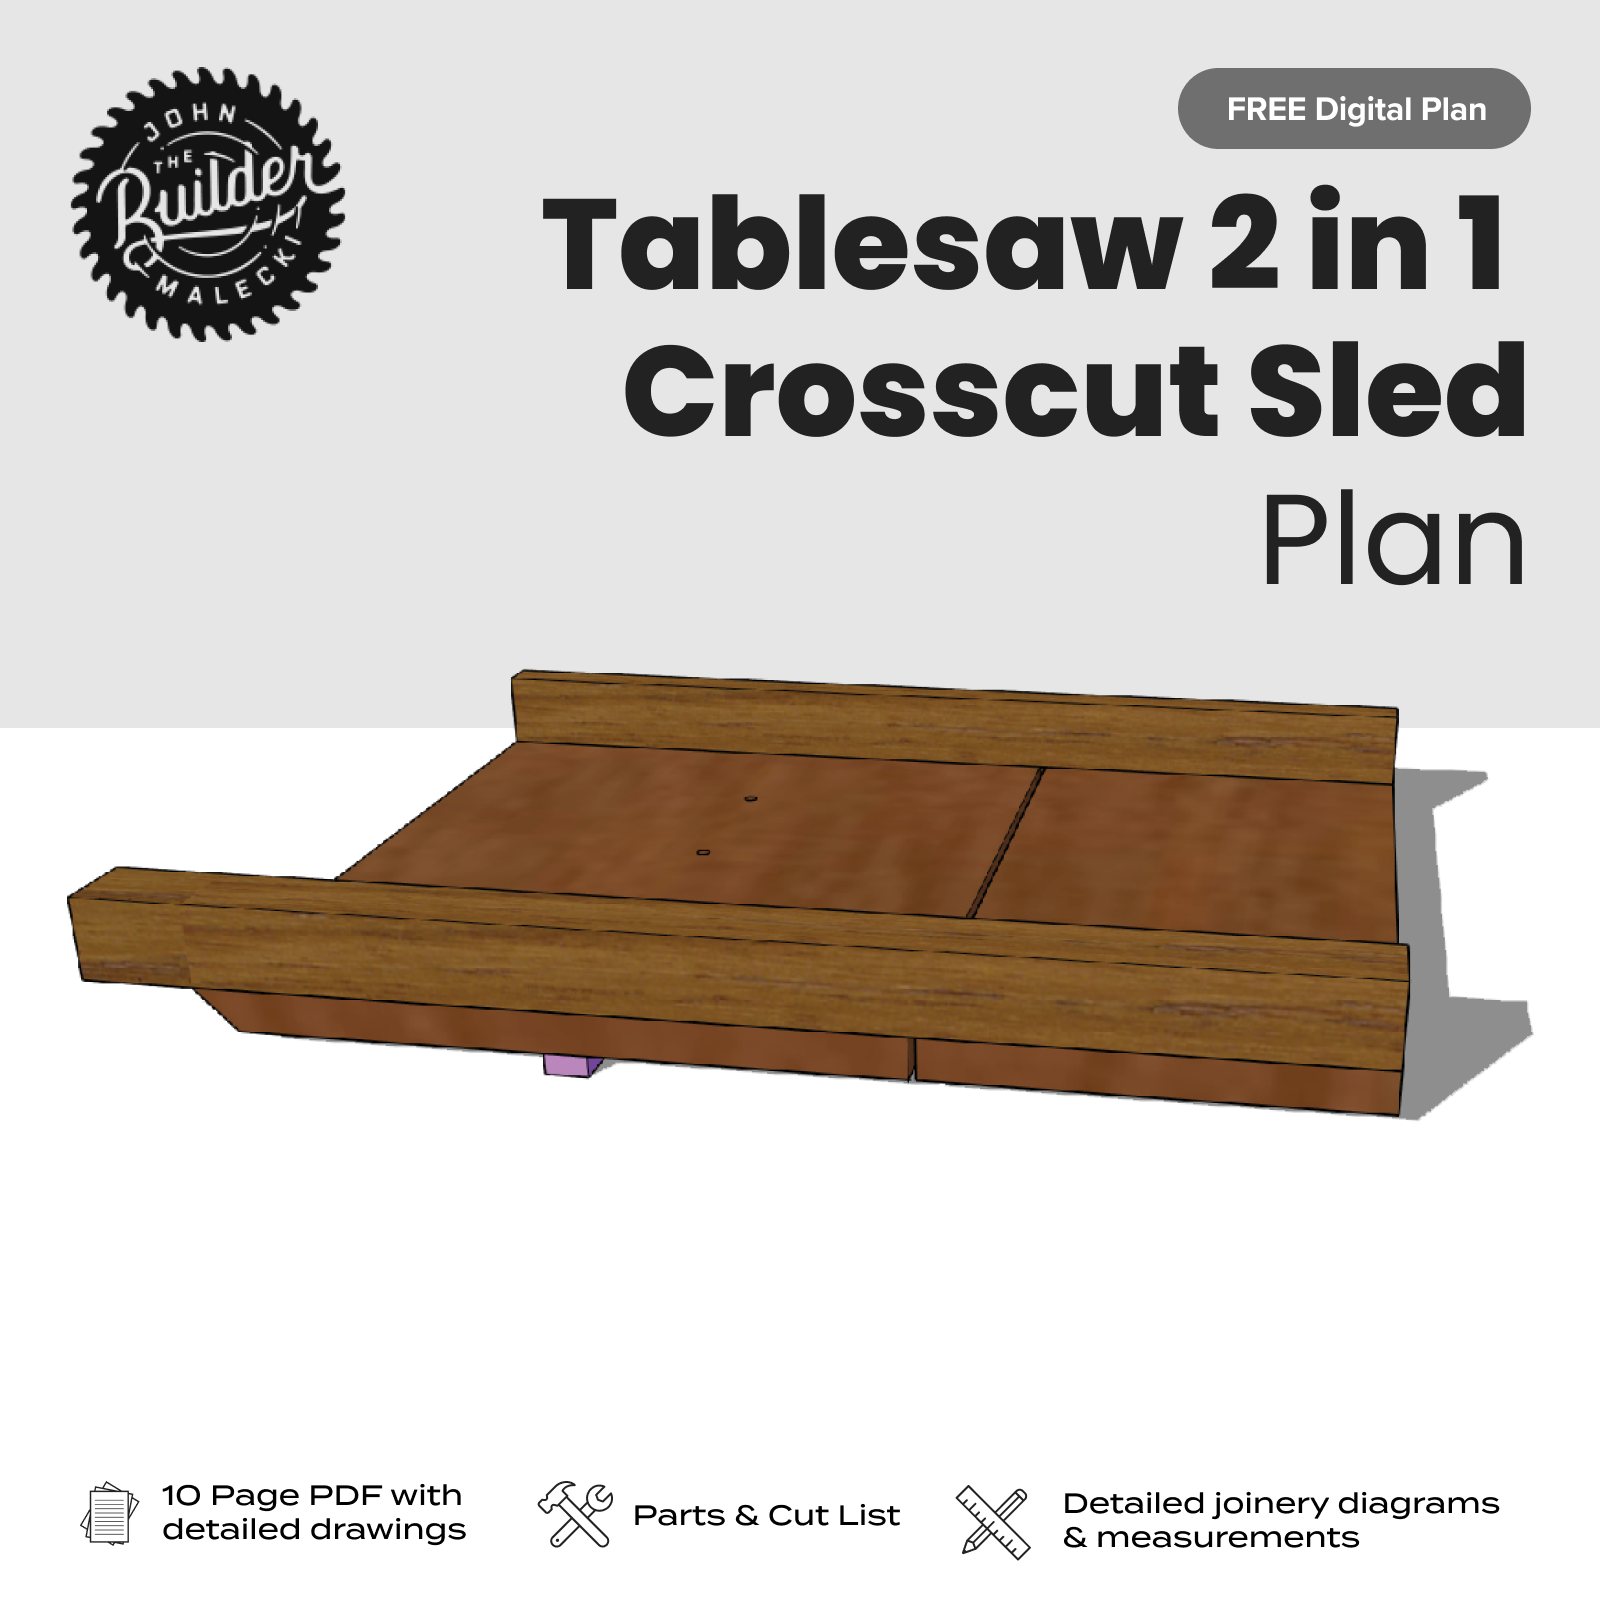 FREE Tablesaw 2 in 1 Crosscut Sled Plan - John Malecki Store